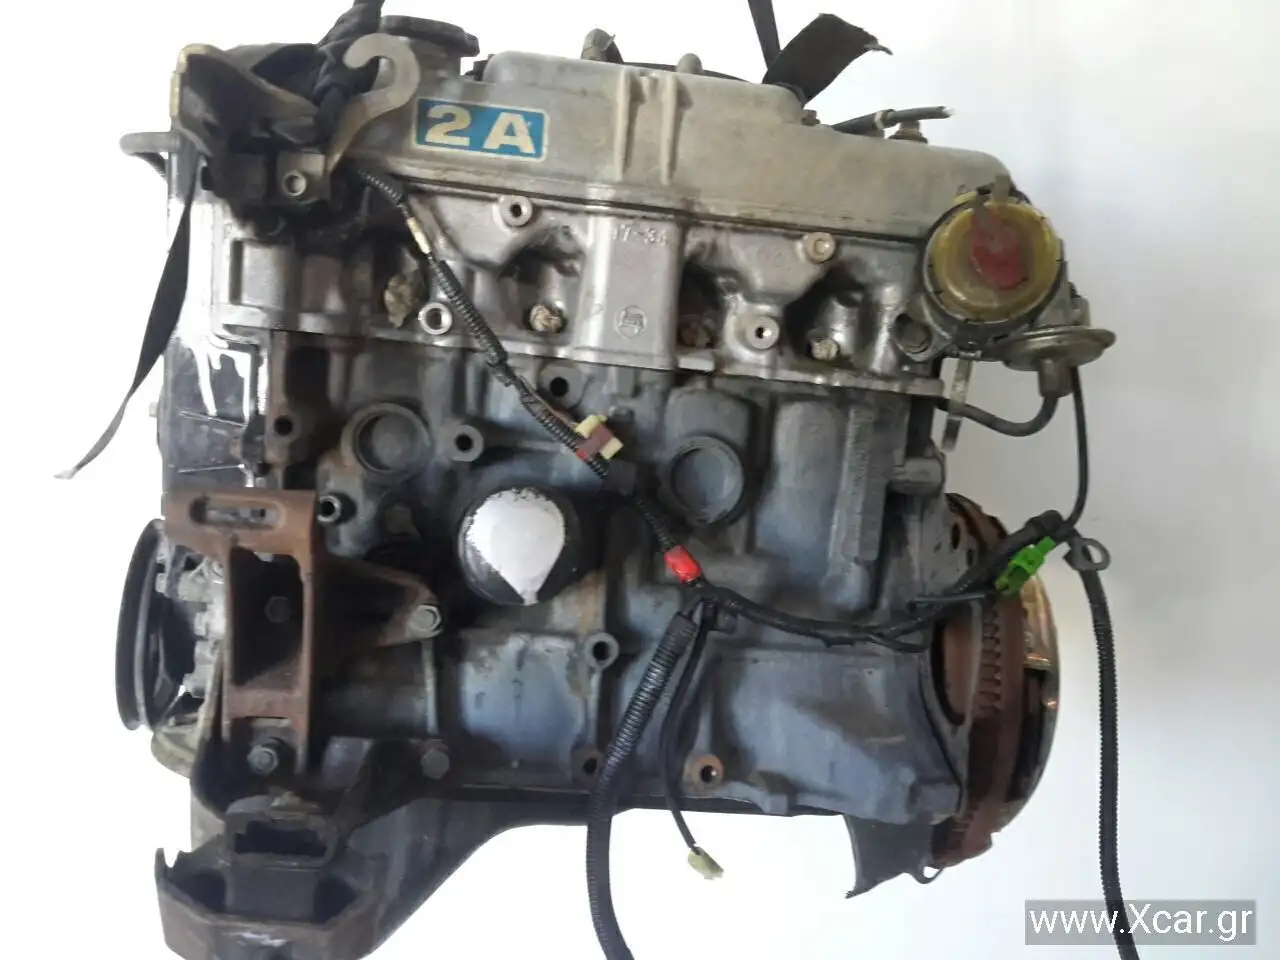 Κινητήρας-Μοτέρ TOYOTA COROLLA Sedan / 4dr 1983 - 1985 ( AE80 ) 1.3 (AE80)  ( 2A-L  ) (69 hp ) Βενζίνη #2A